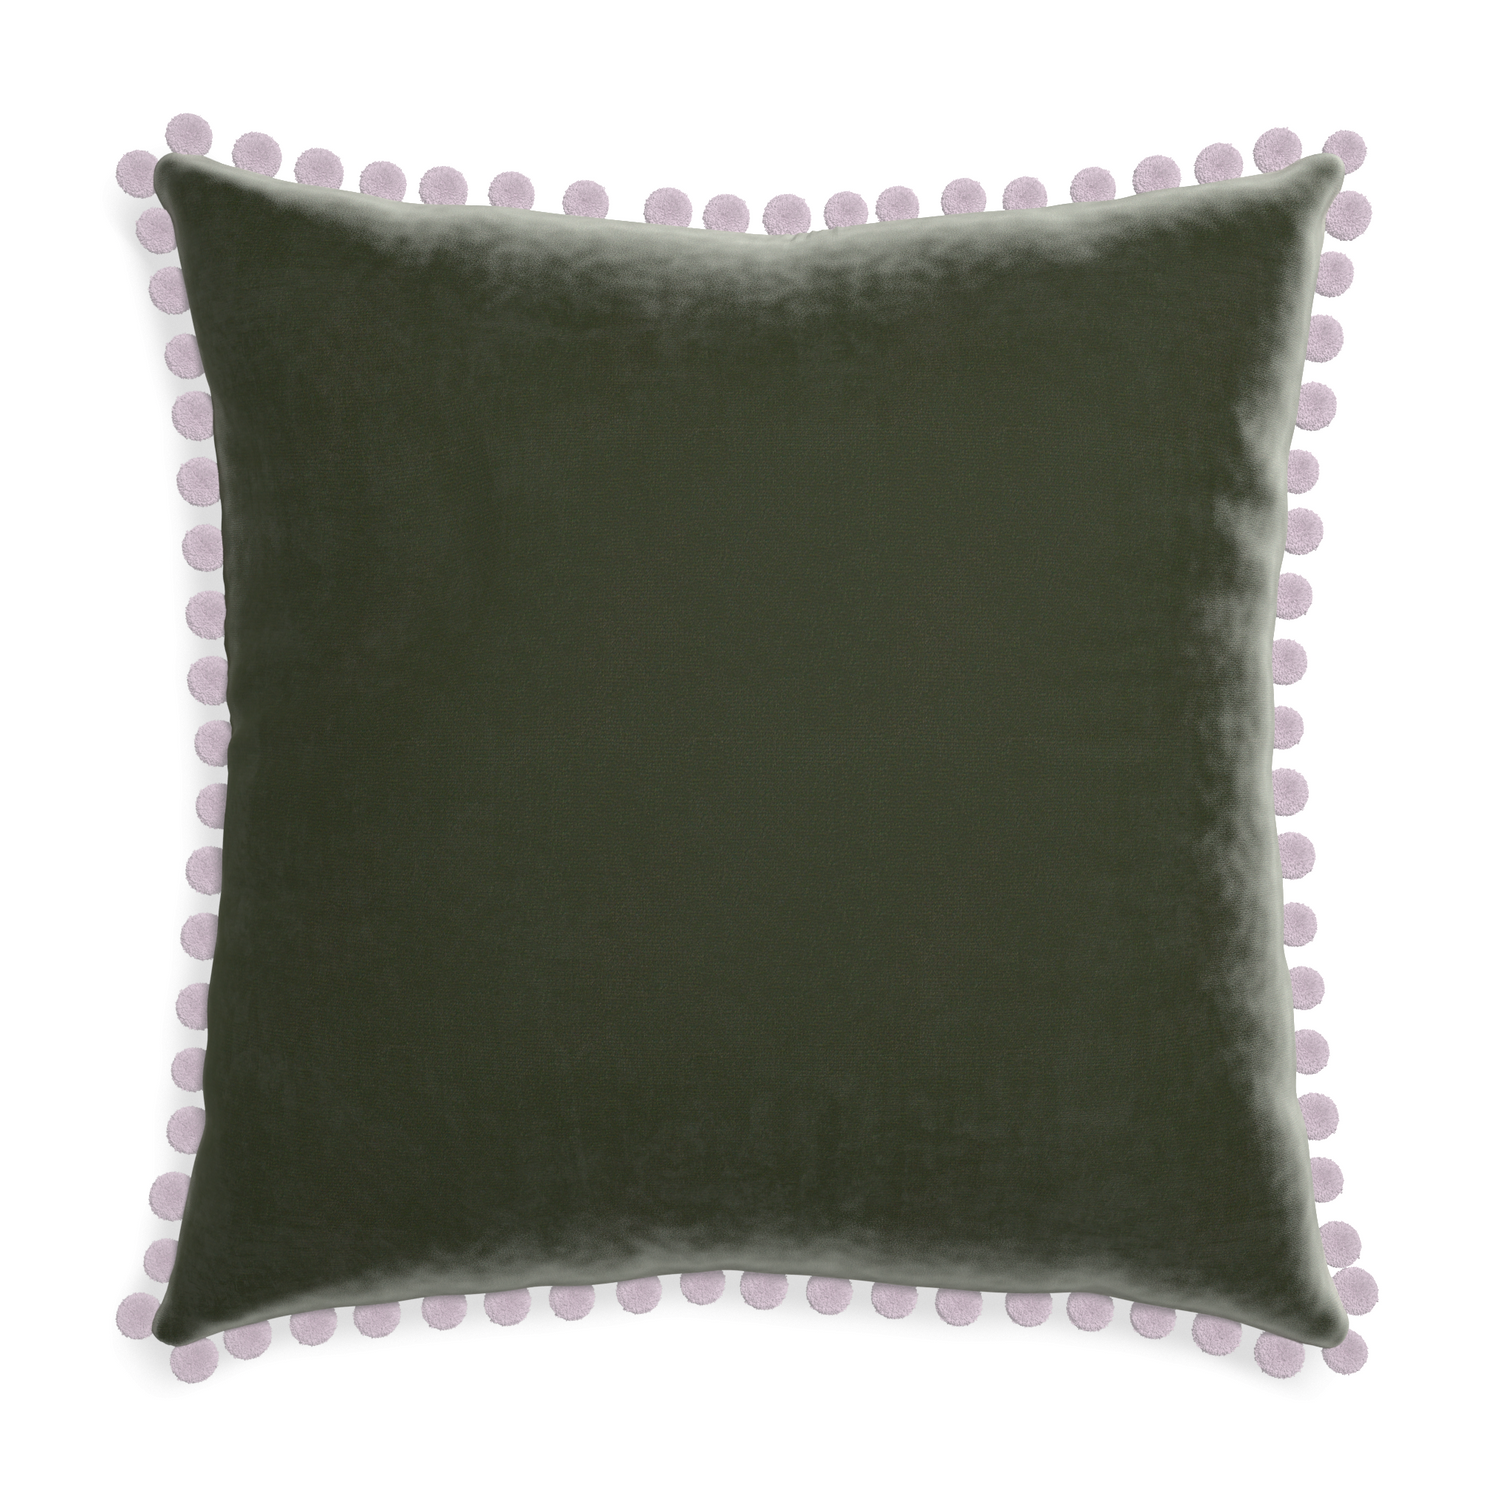 Euro-sham fern velvet custom pillow with l on white background